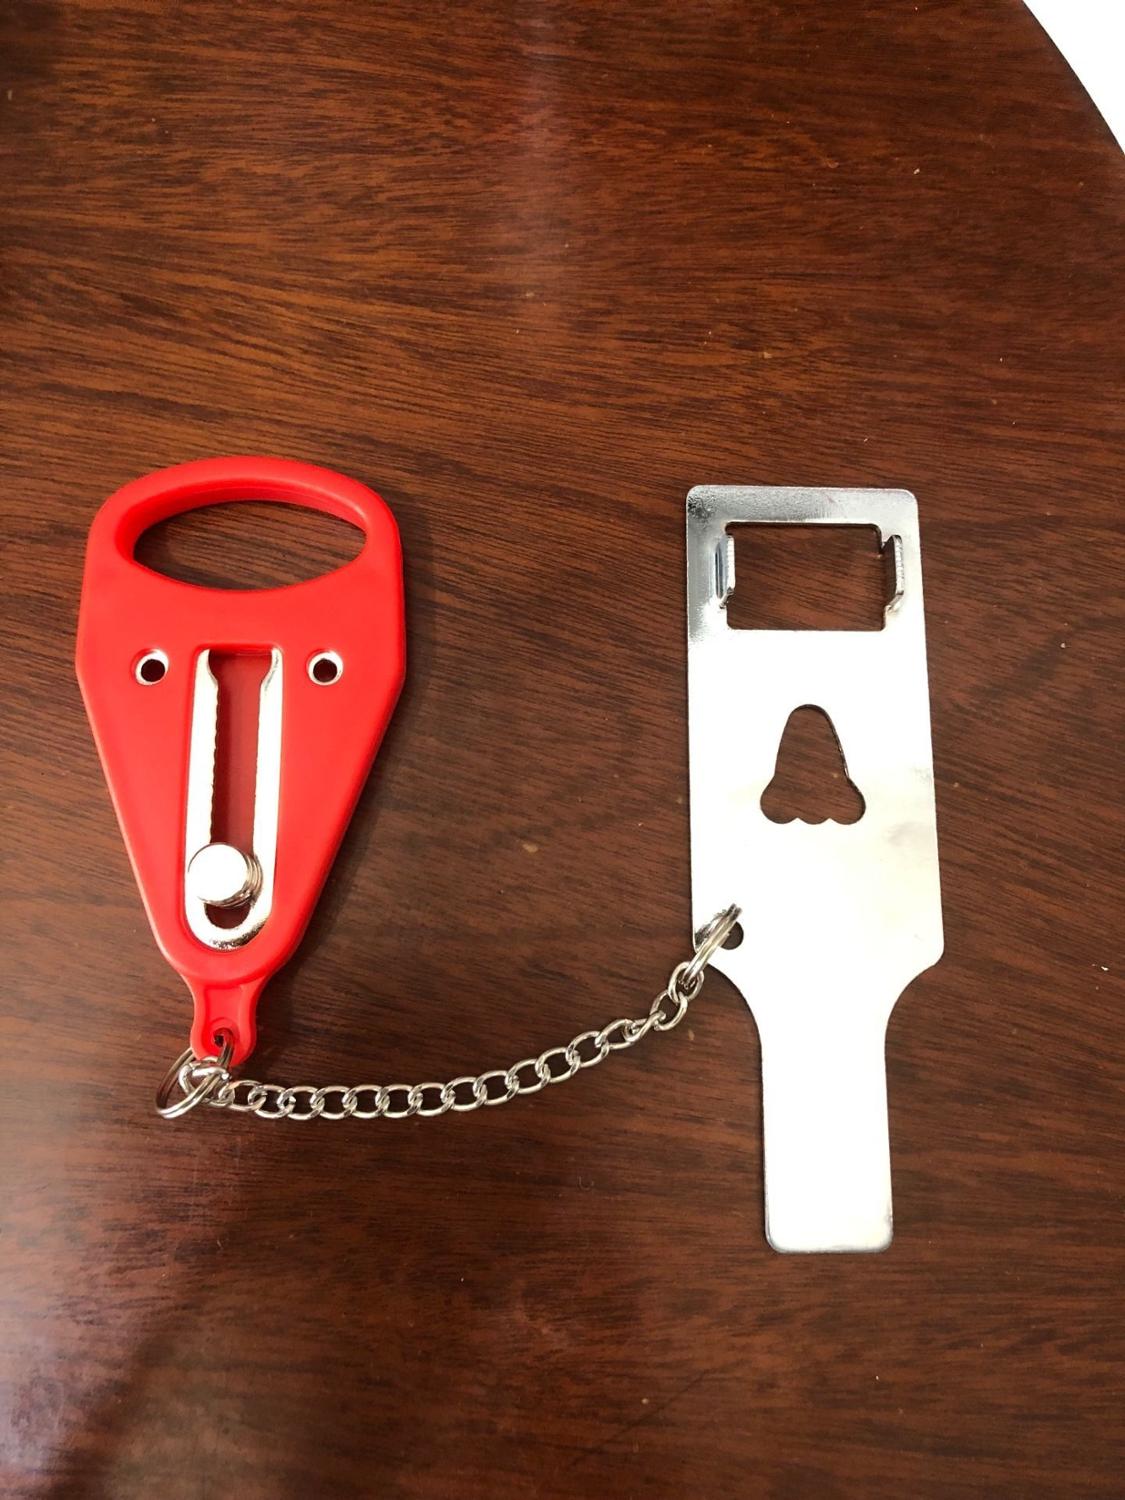 Pp metal bærbar sikkerhedsdørlås erstatter addalock-kompatibel rejselås tyverisikring privatliv hotelværelse: Stort hul rødt 1